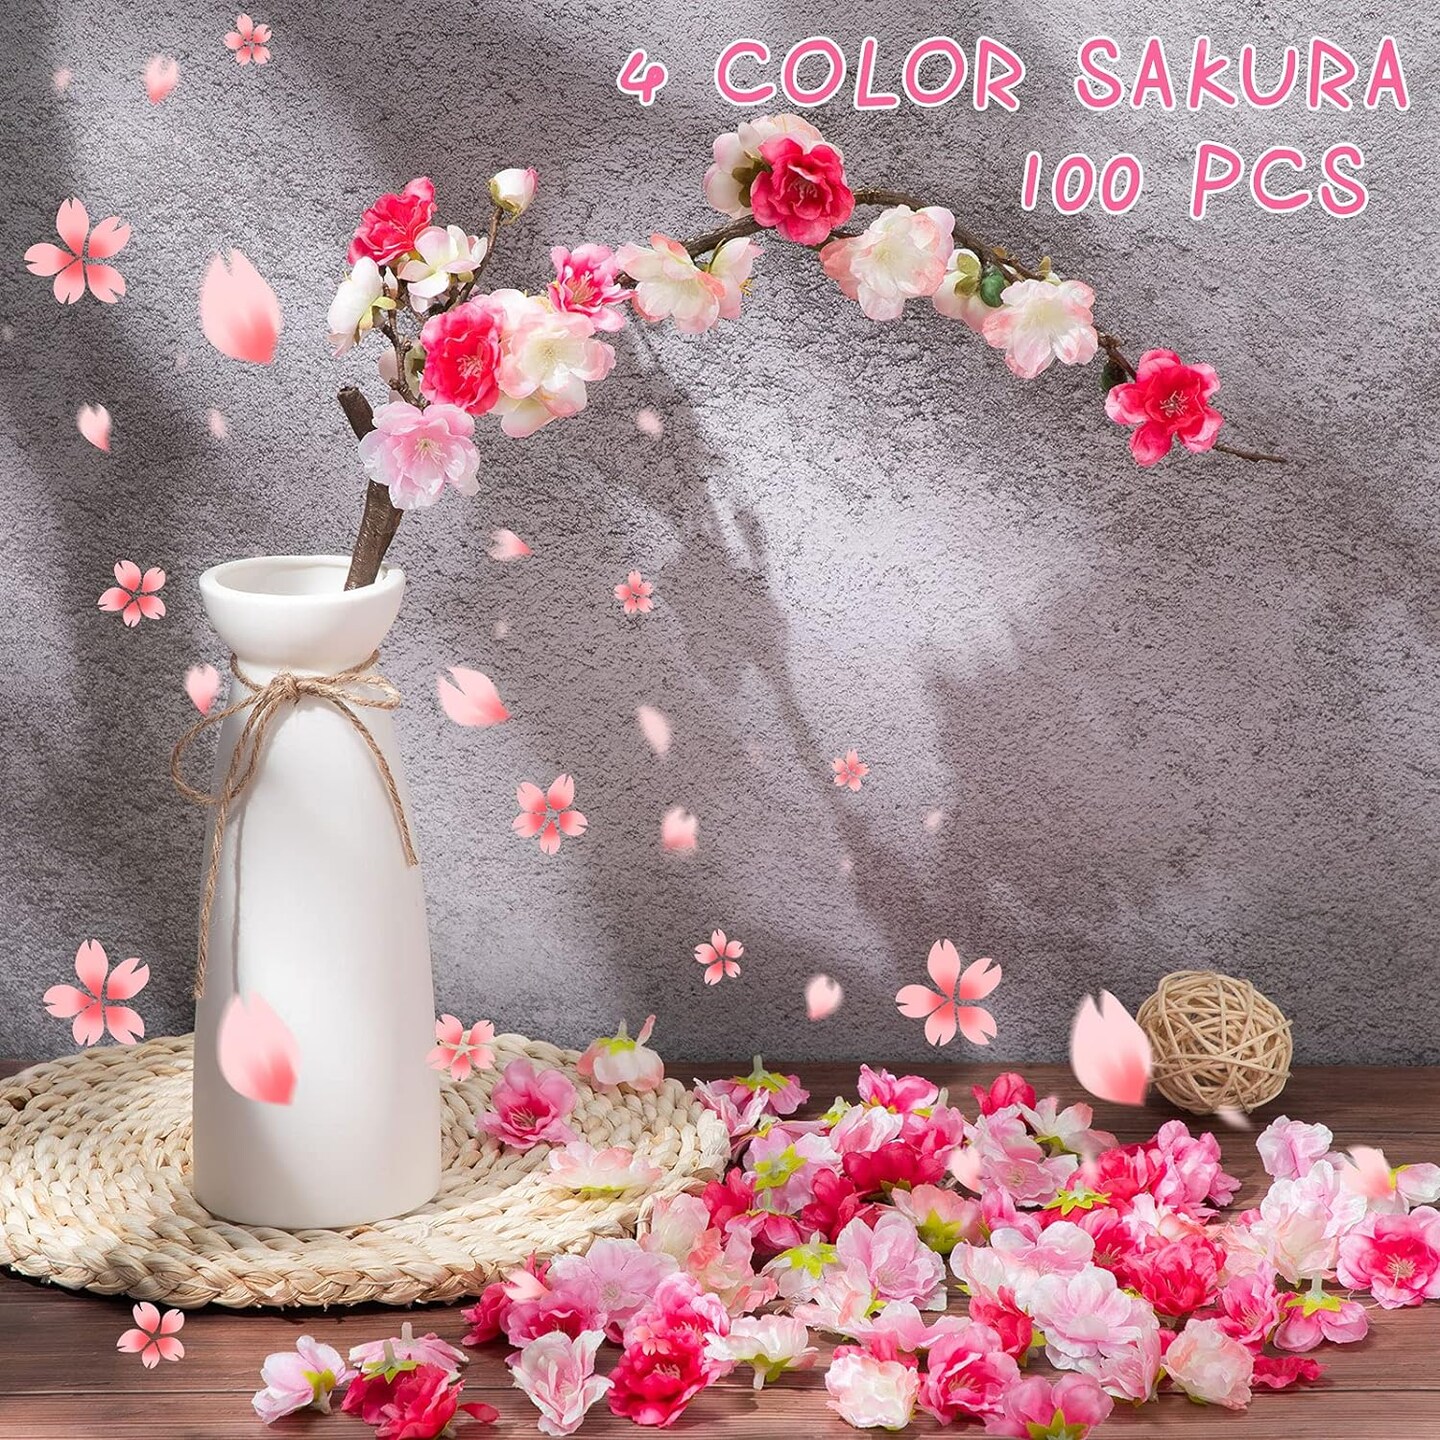 Artificial Sakura Floral Head Decor 100 pcs